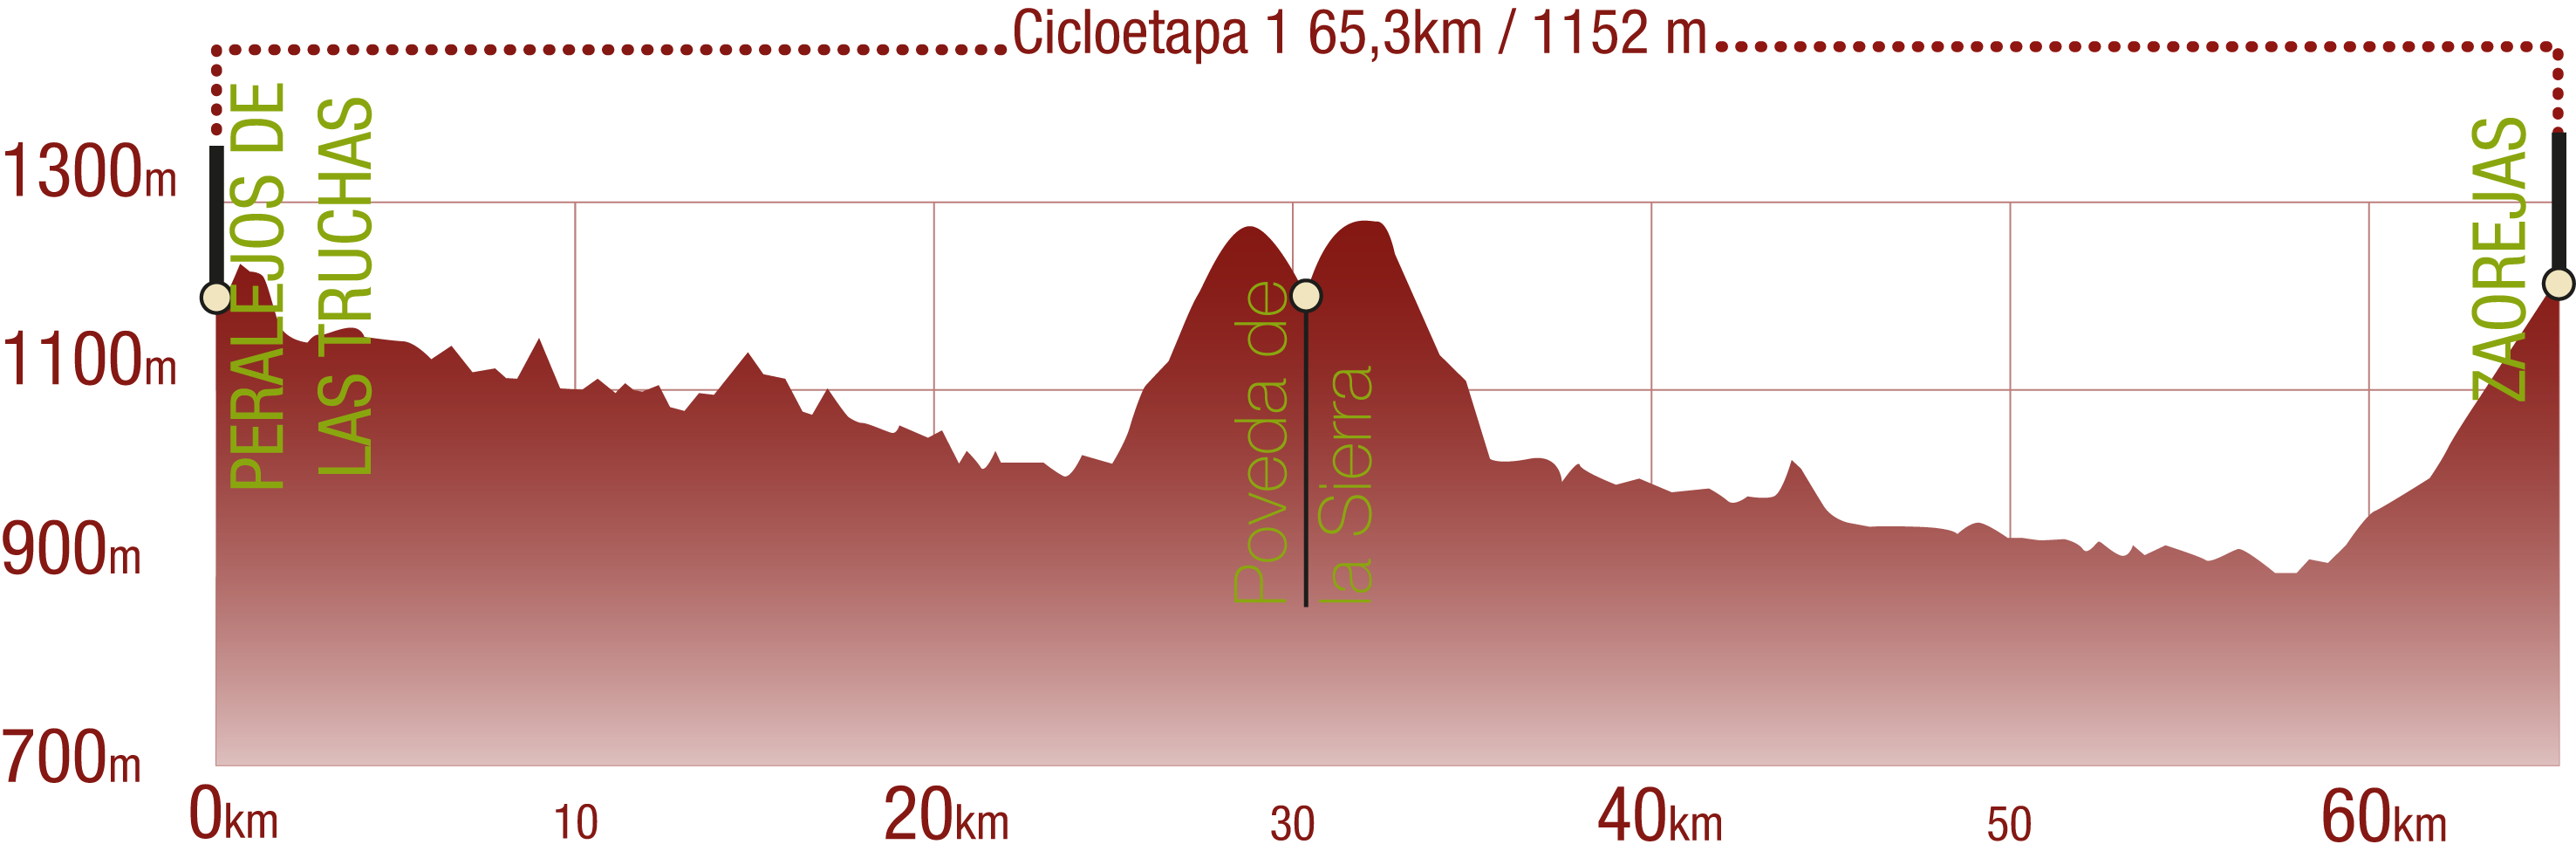 Perfil 
Perfil de la Cicloetapa 1 del CN del Tajo: 65,3 km / Desnivel de subida 1152 m

